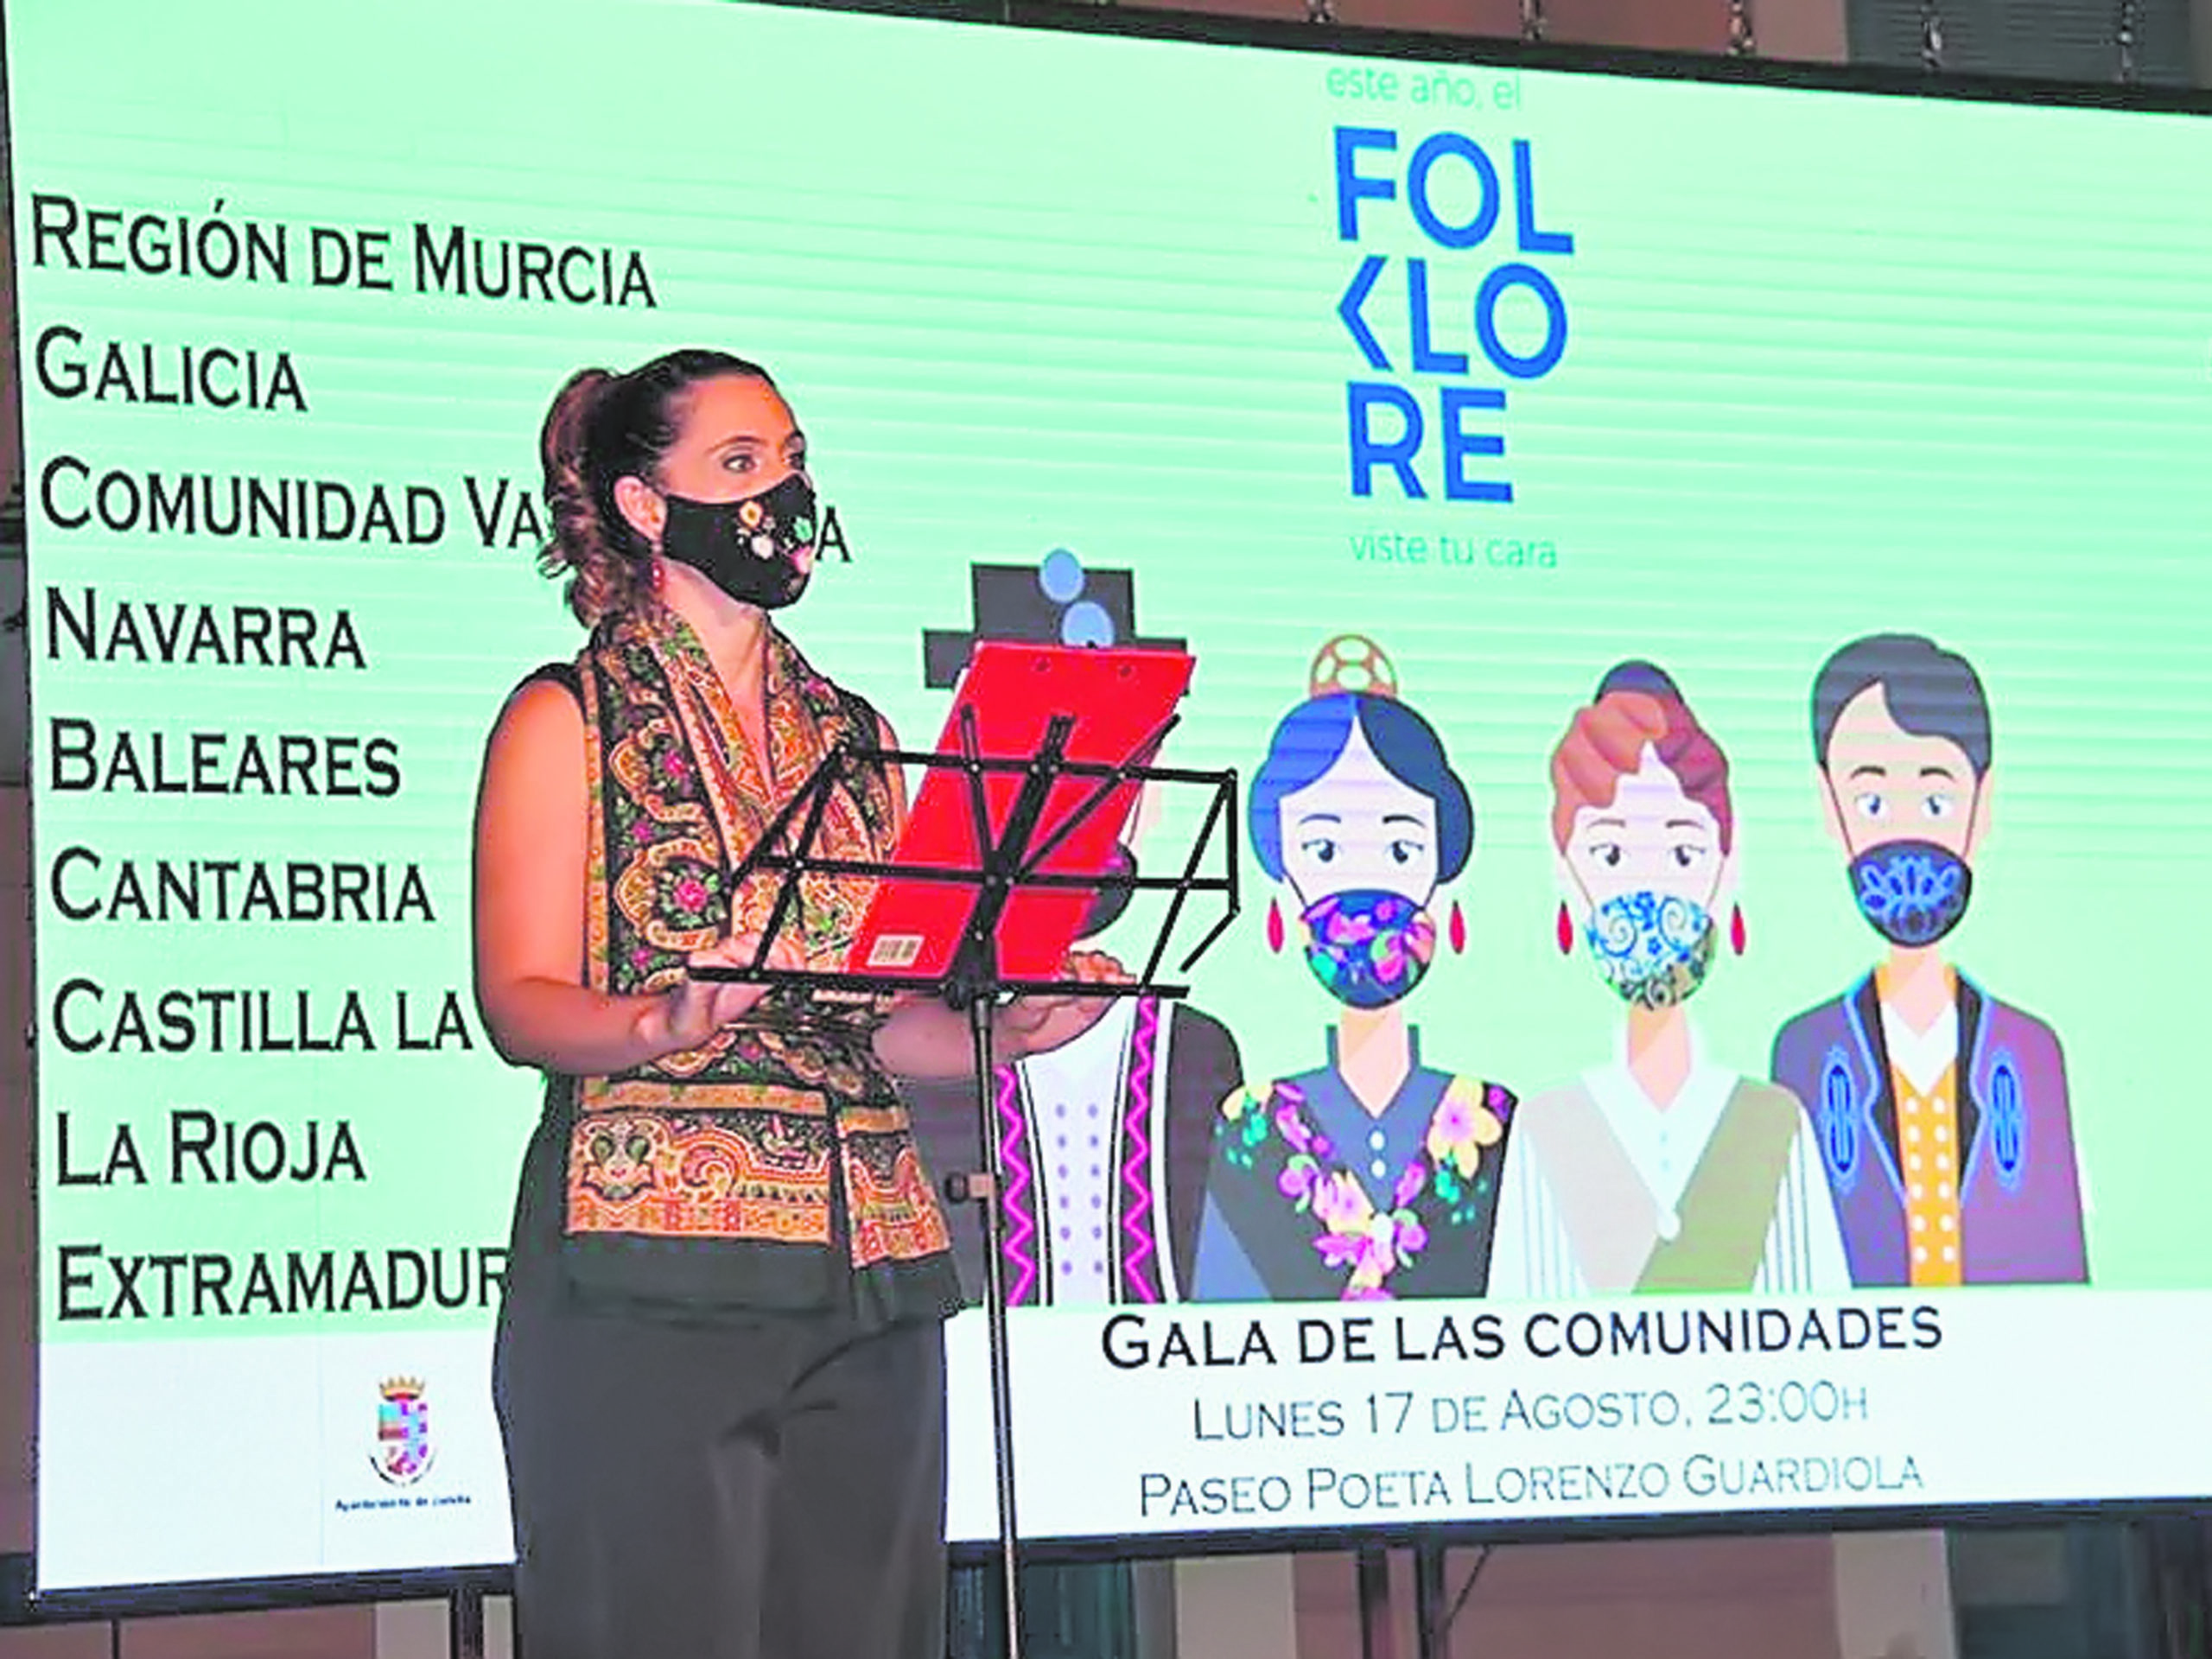 El Festival Nacional de Folklore despide su edición ‘virtual’ con la Gala de las Comunidades